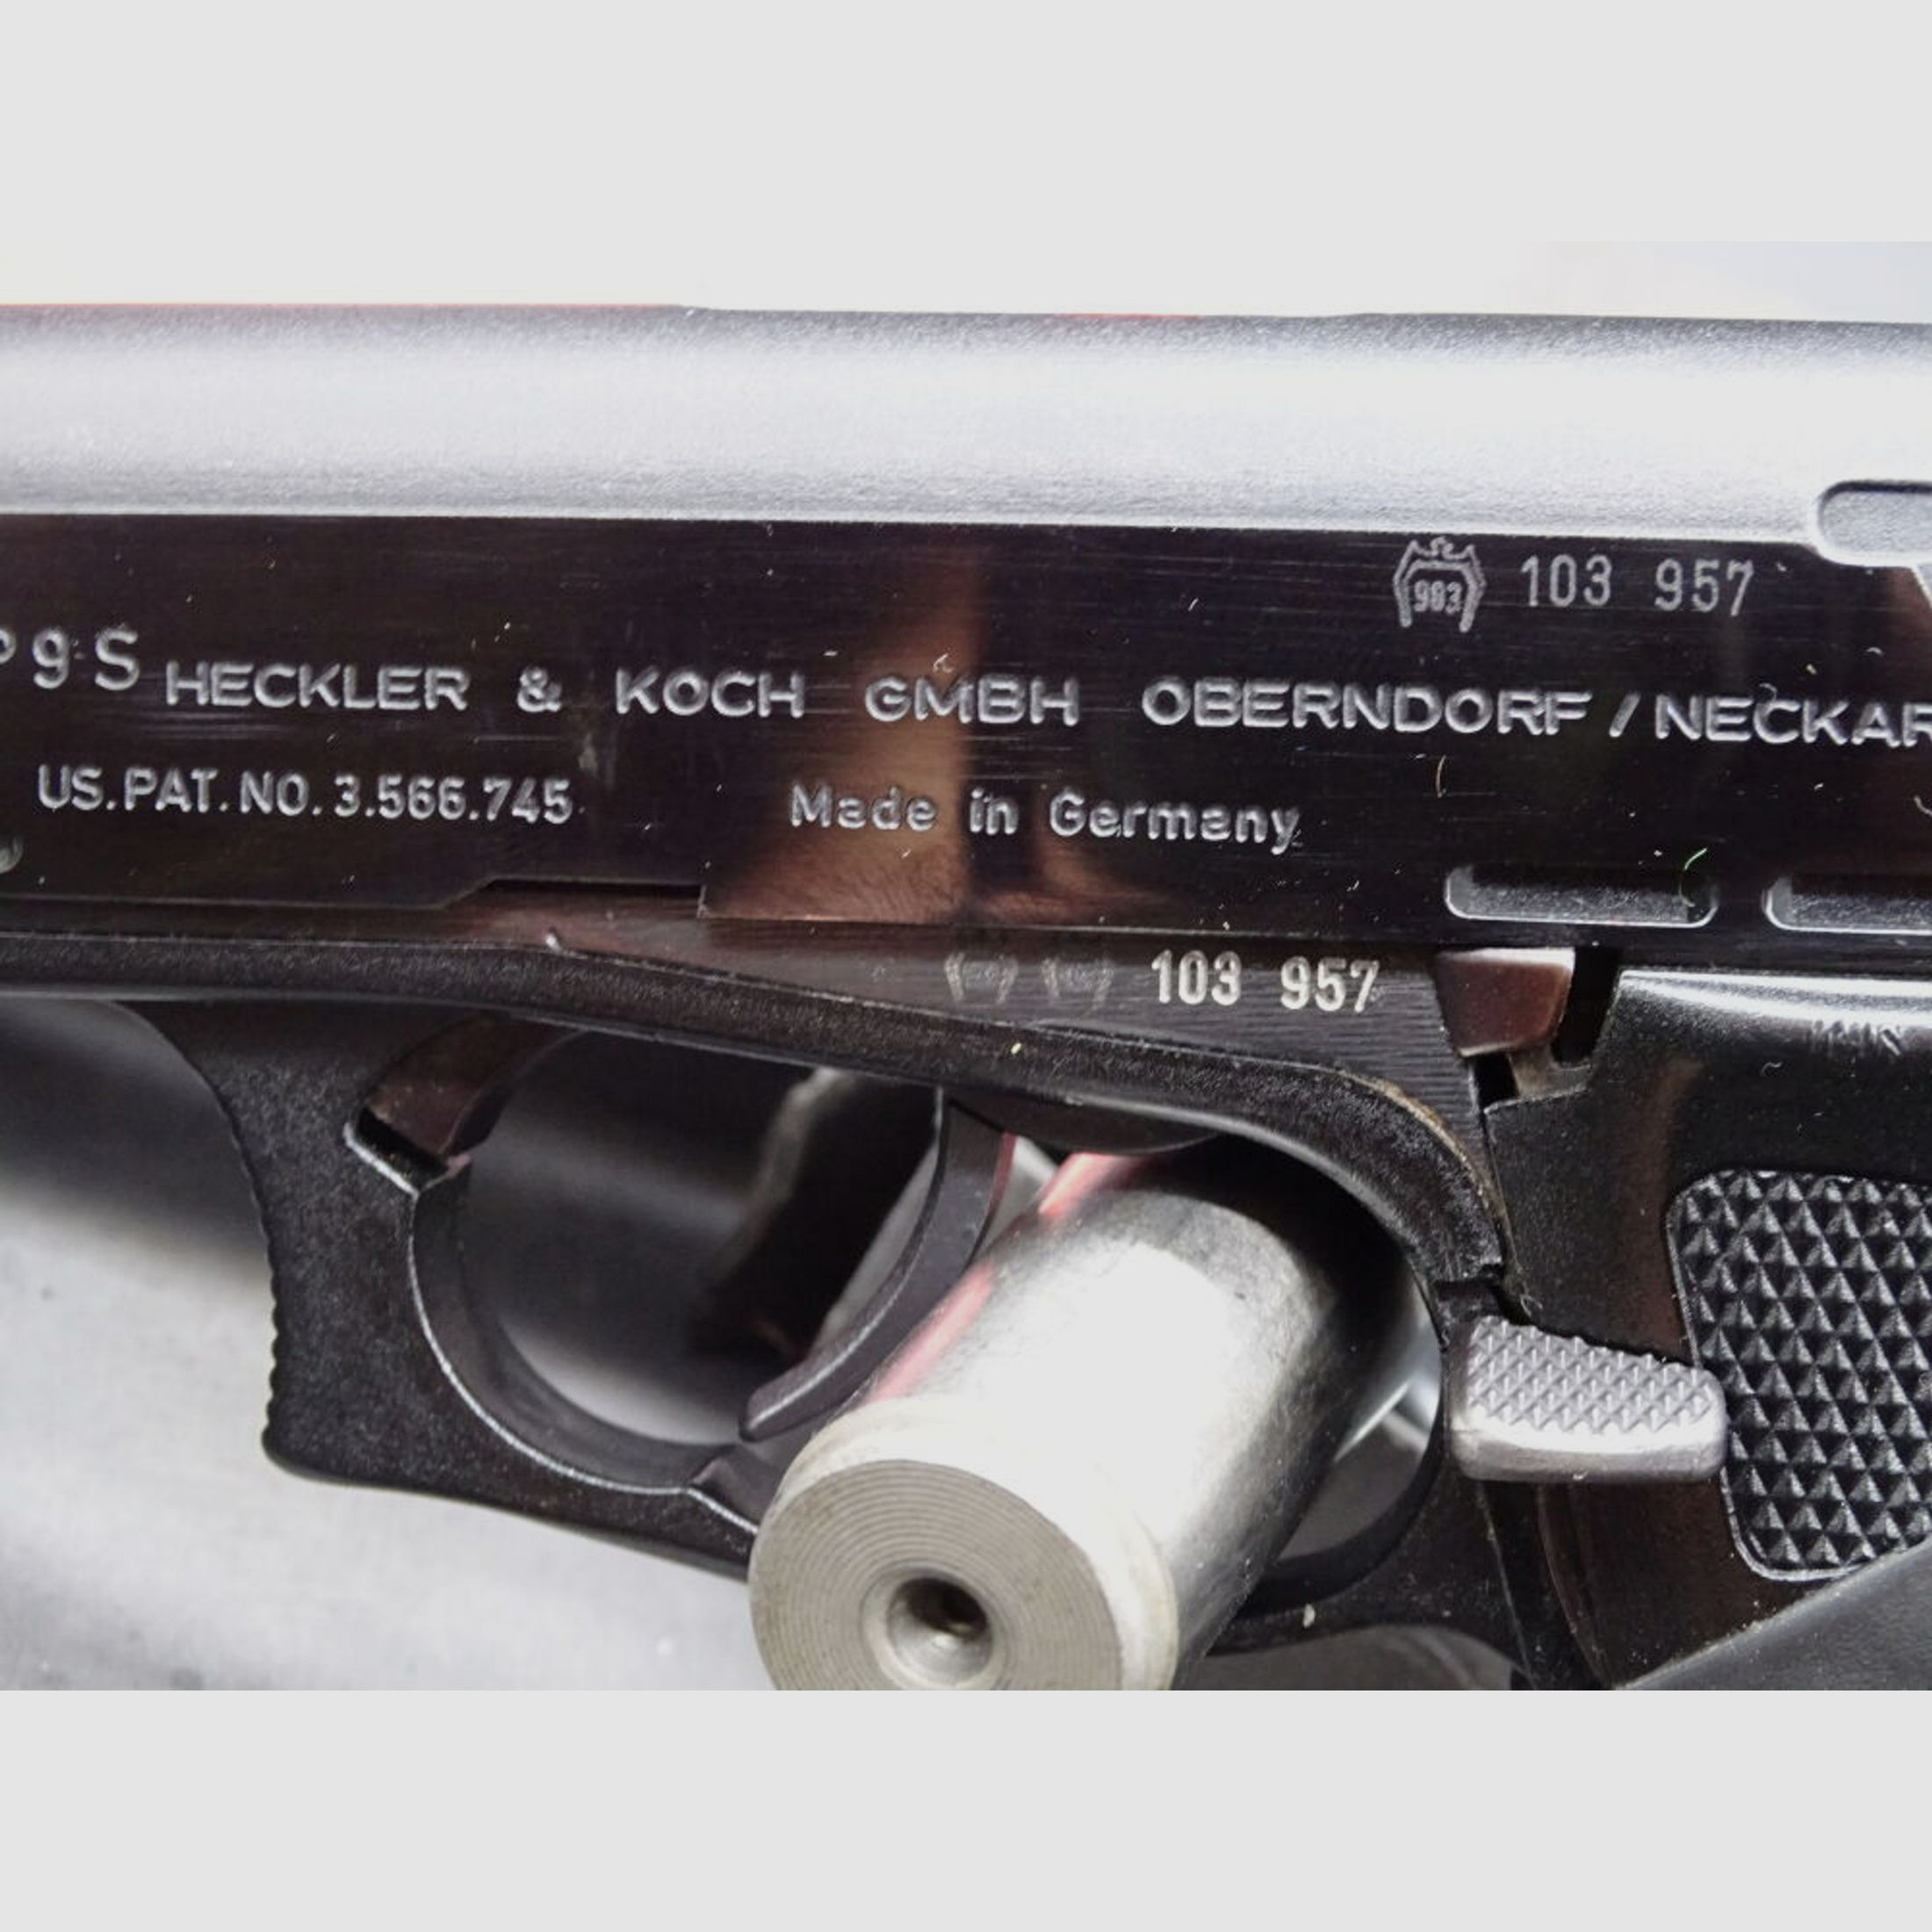 HK Heckler & Koch P9S Kaliber 9mm Luger	 P9S